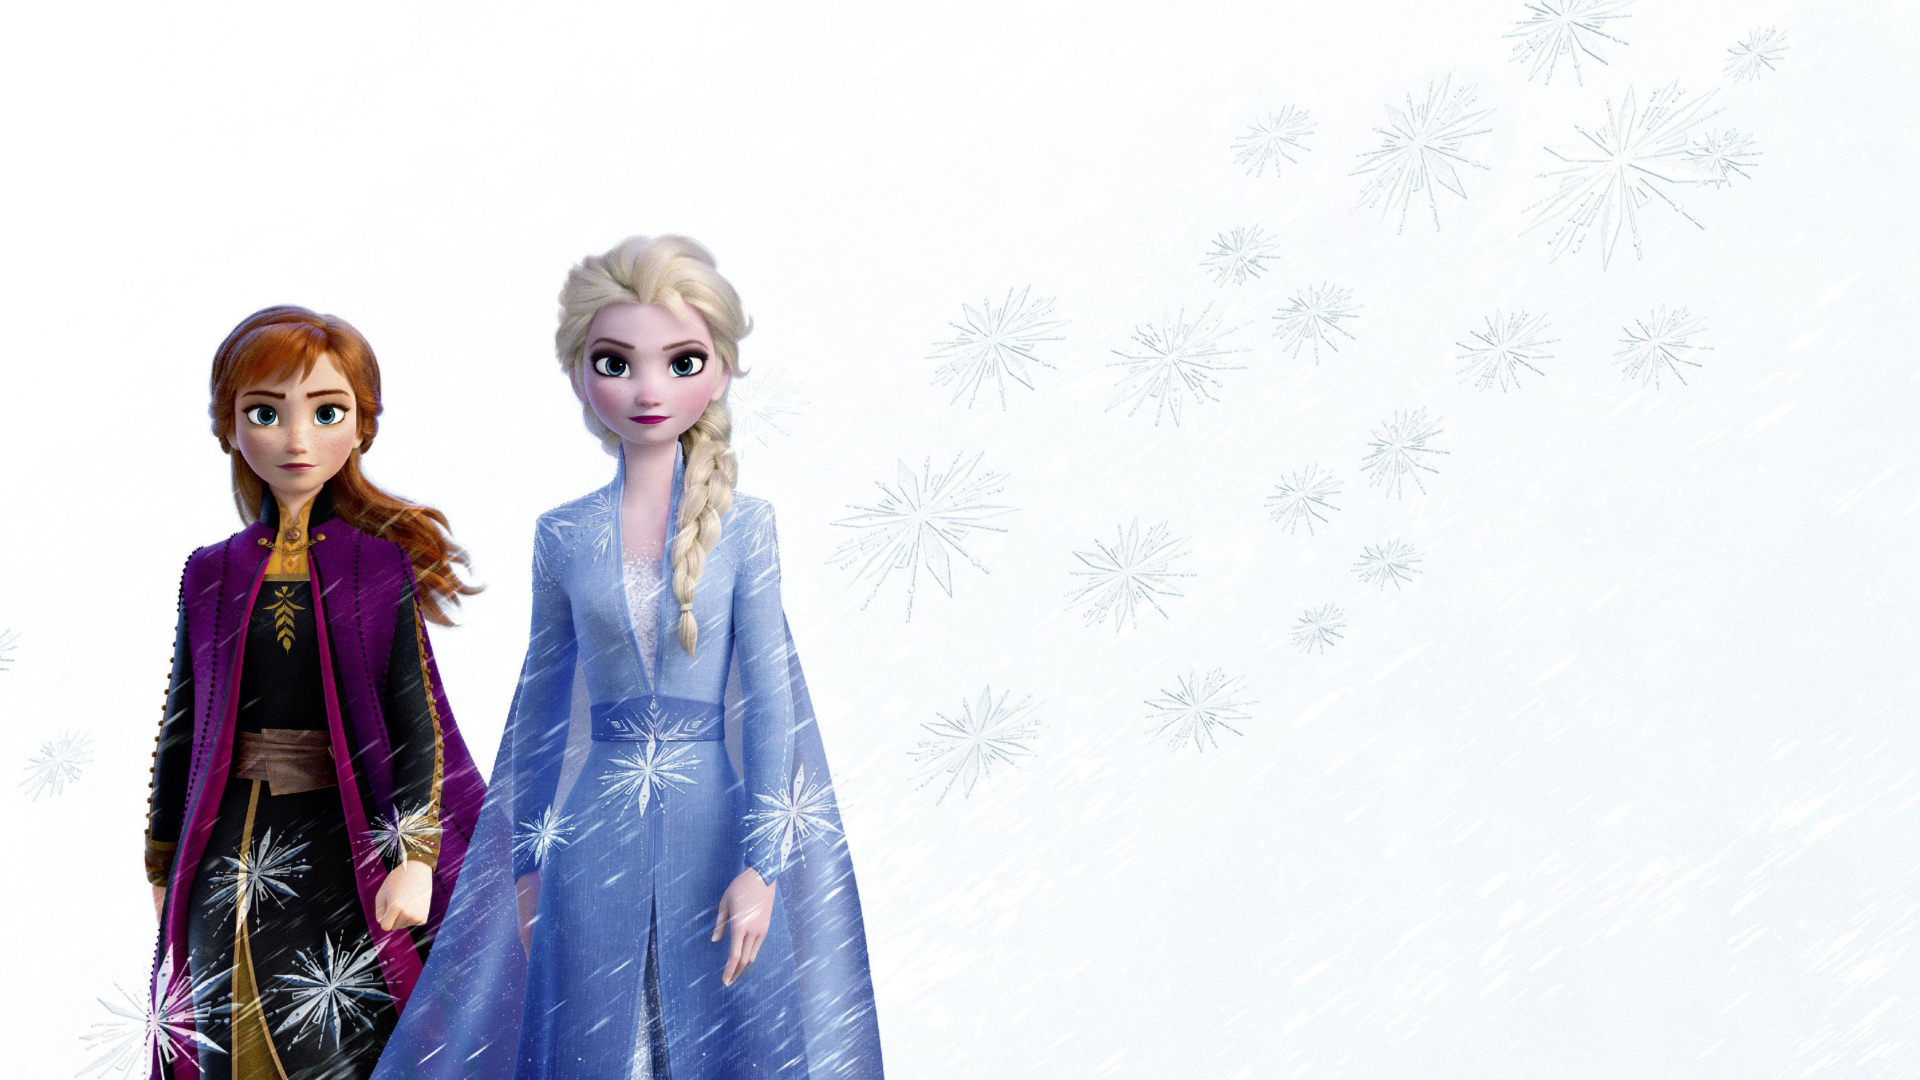 Elsa And Anna Frozen 2 - 1920x1080 Wallpaper 